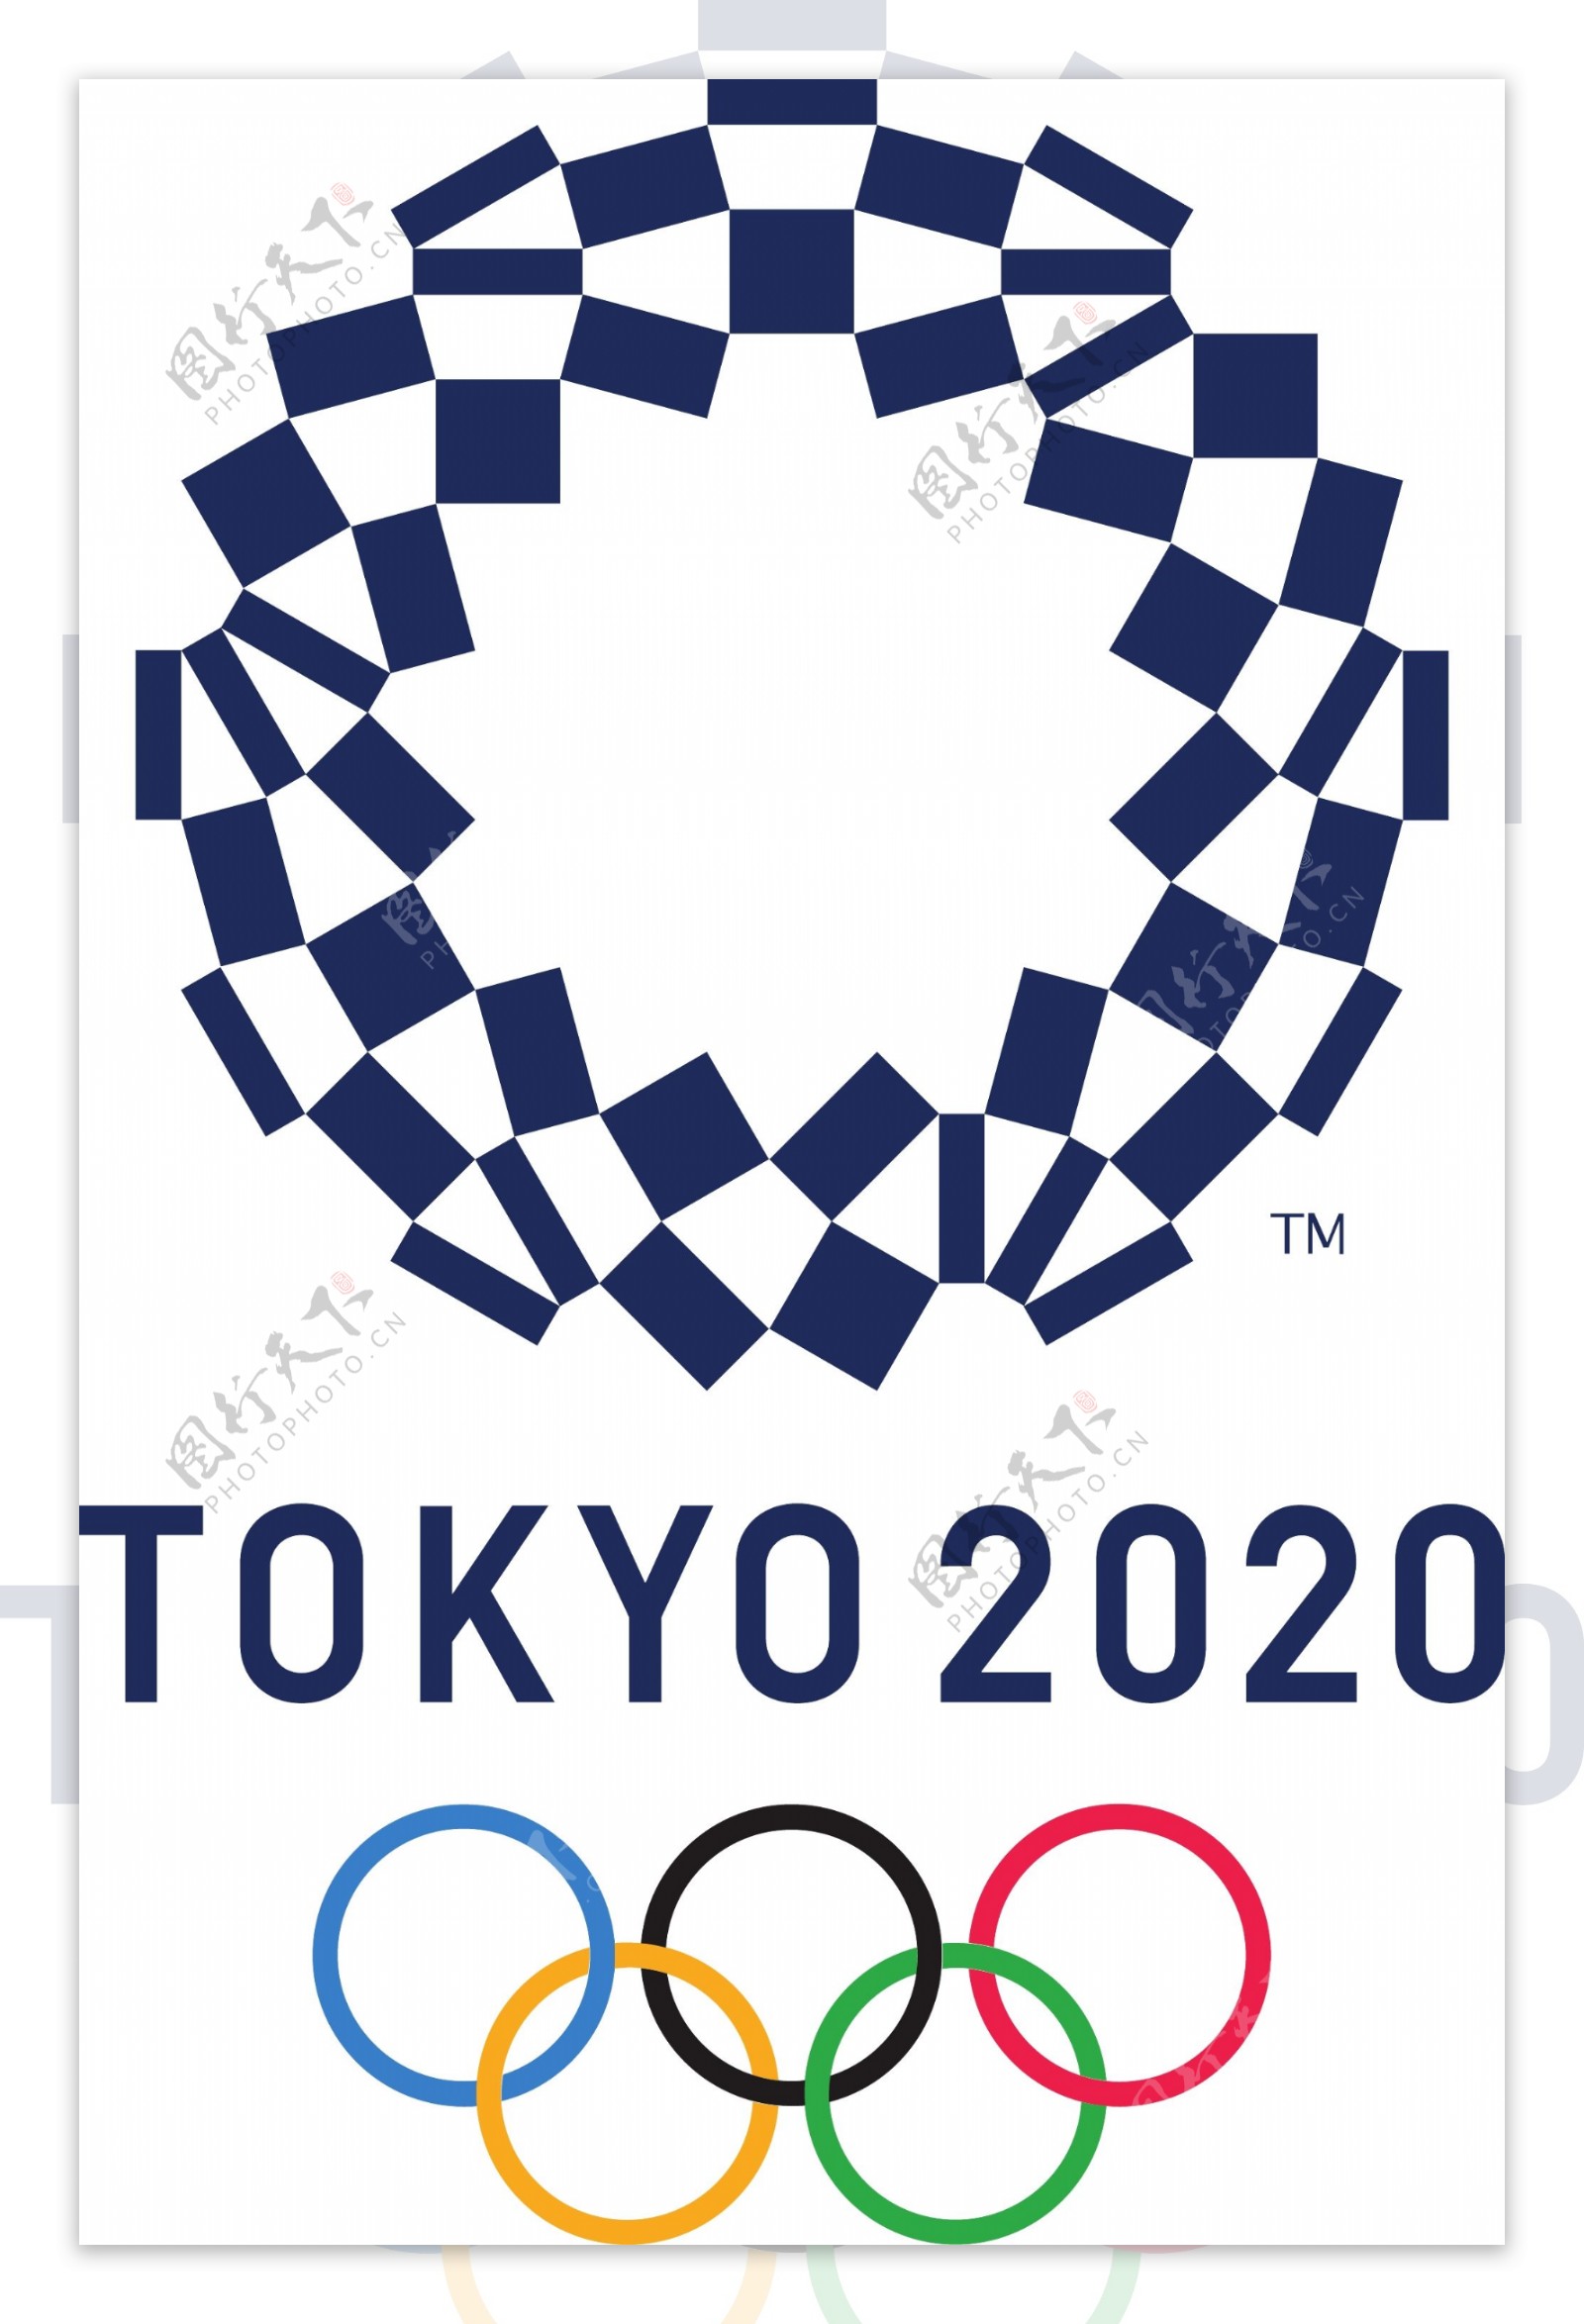 2020年东京奥运会会徽